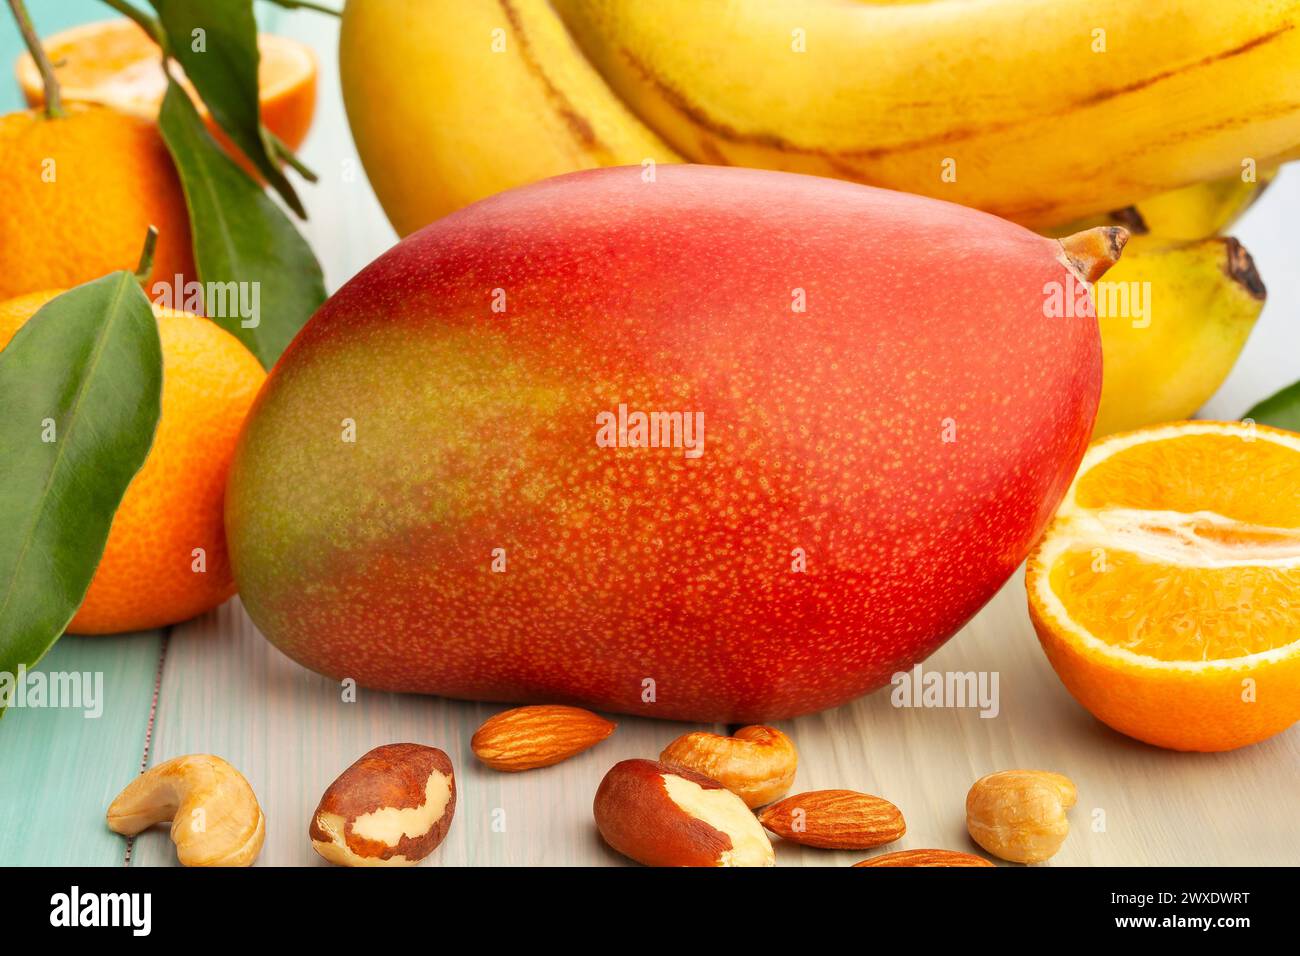 mango fruit on wood background Stock Photo